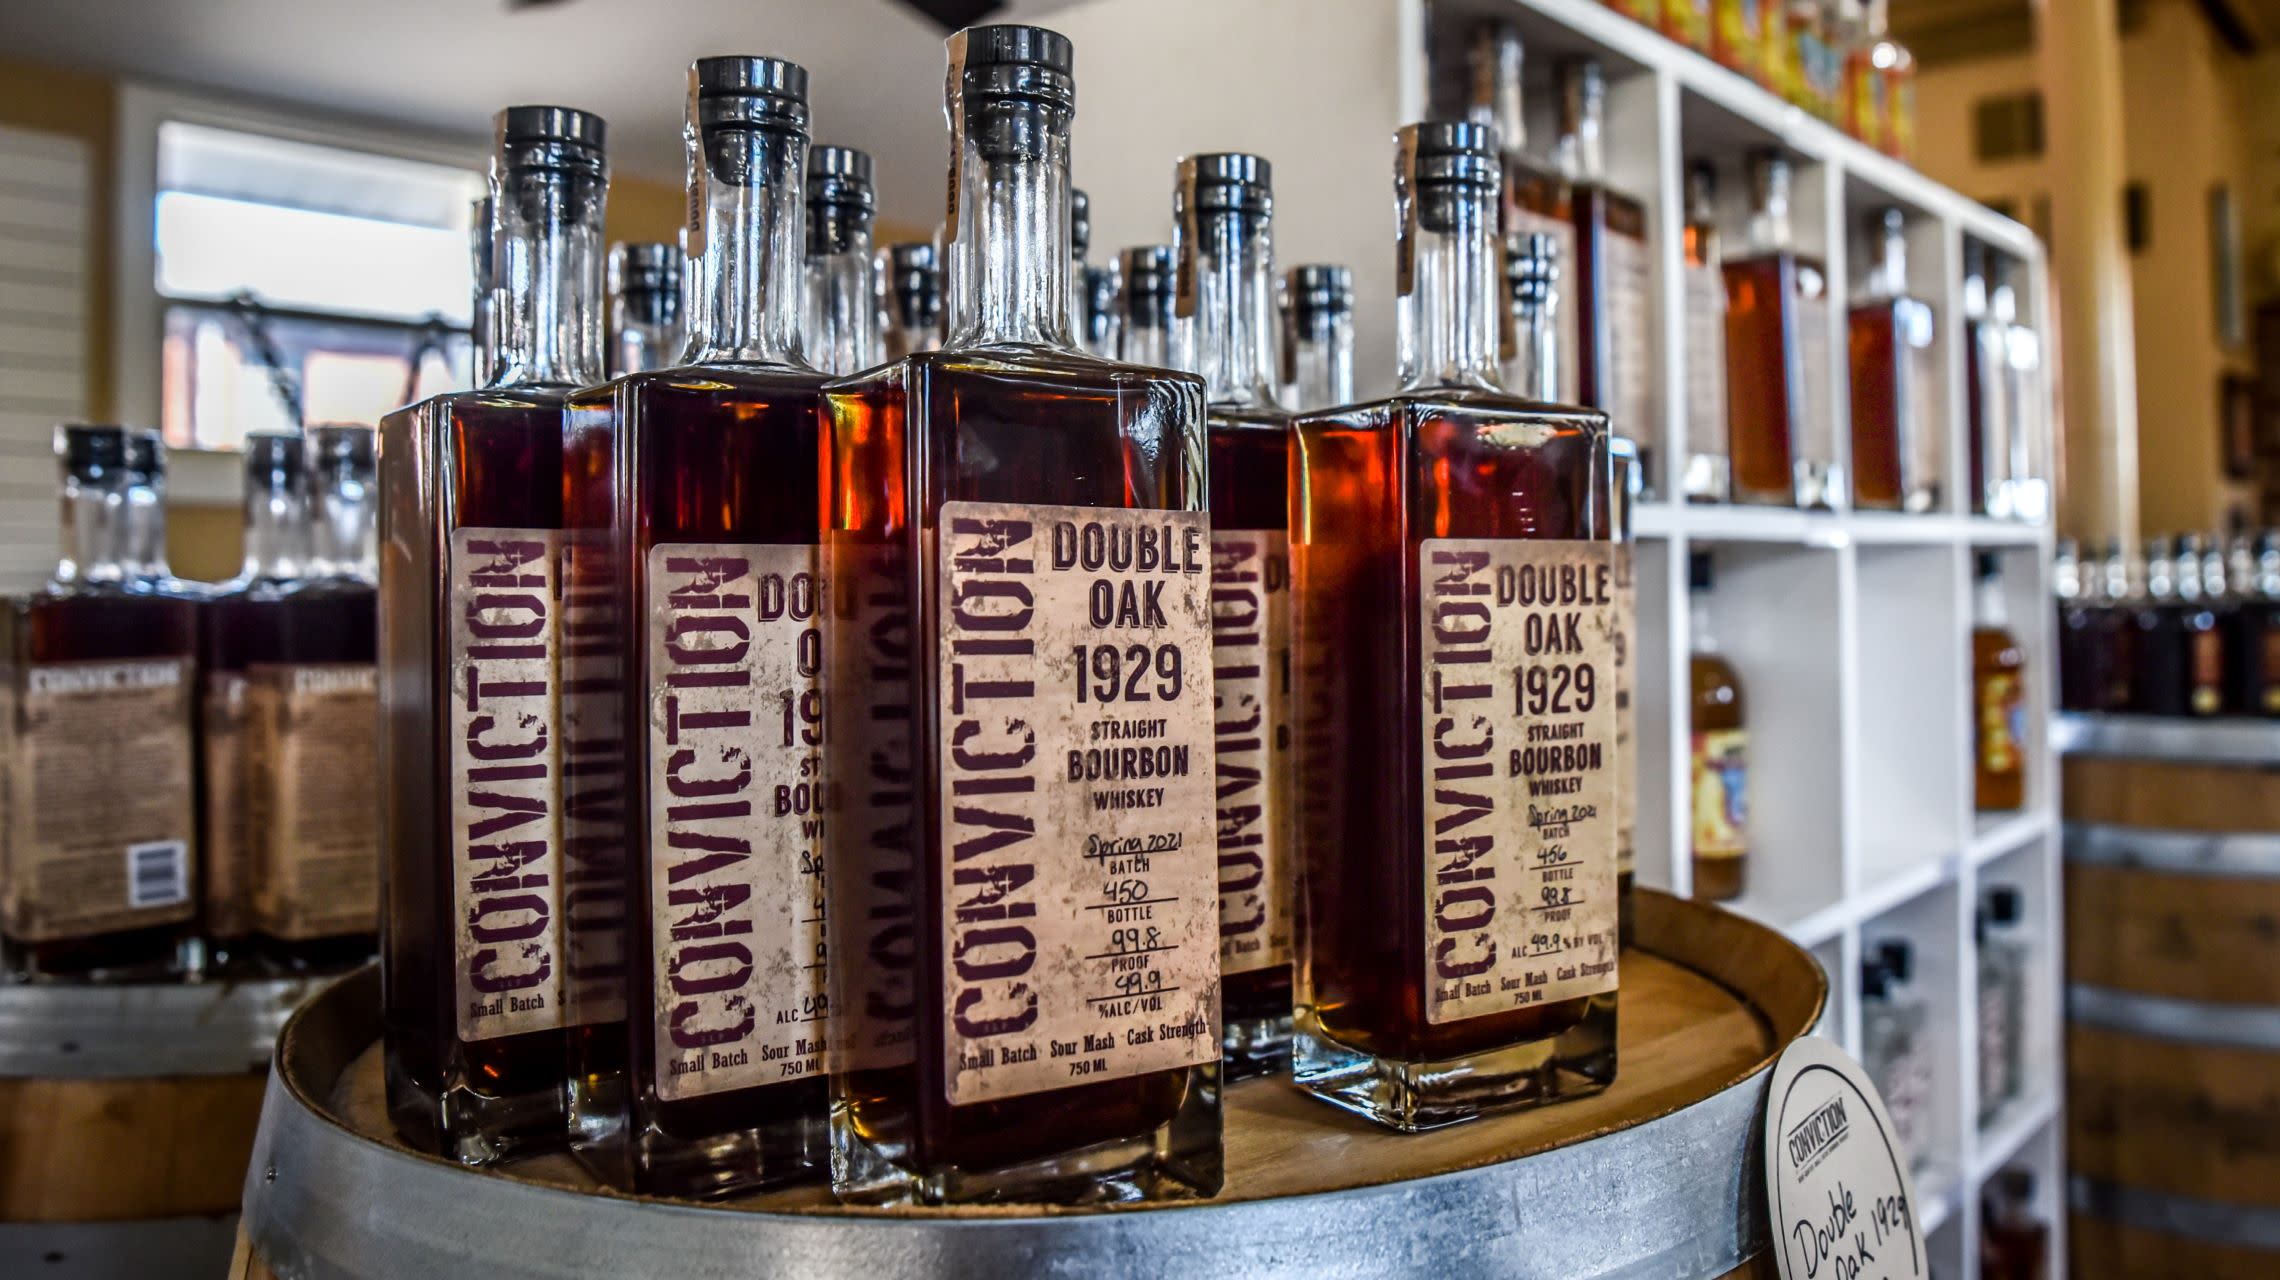 bourbon bottles on display inside gift shop